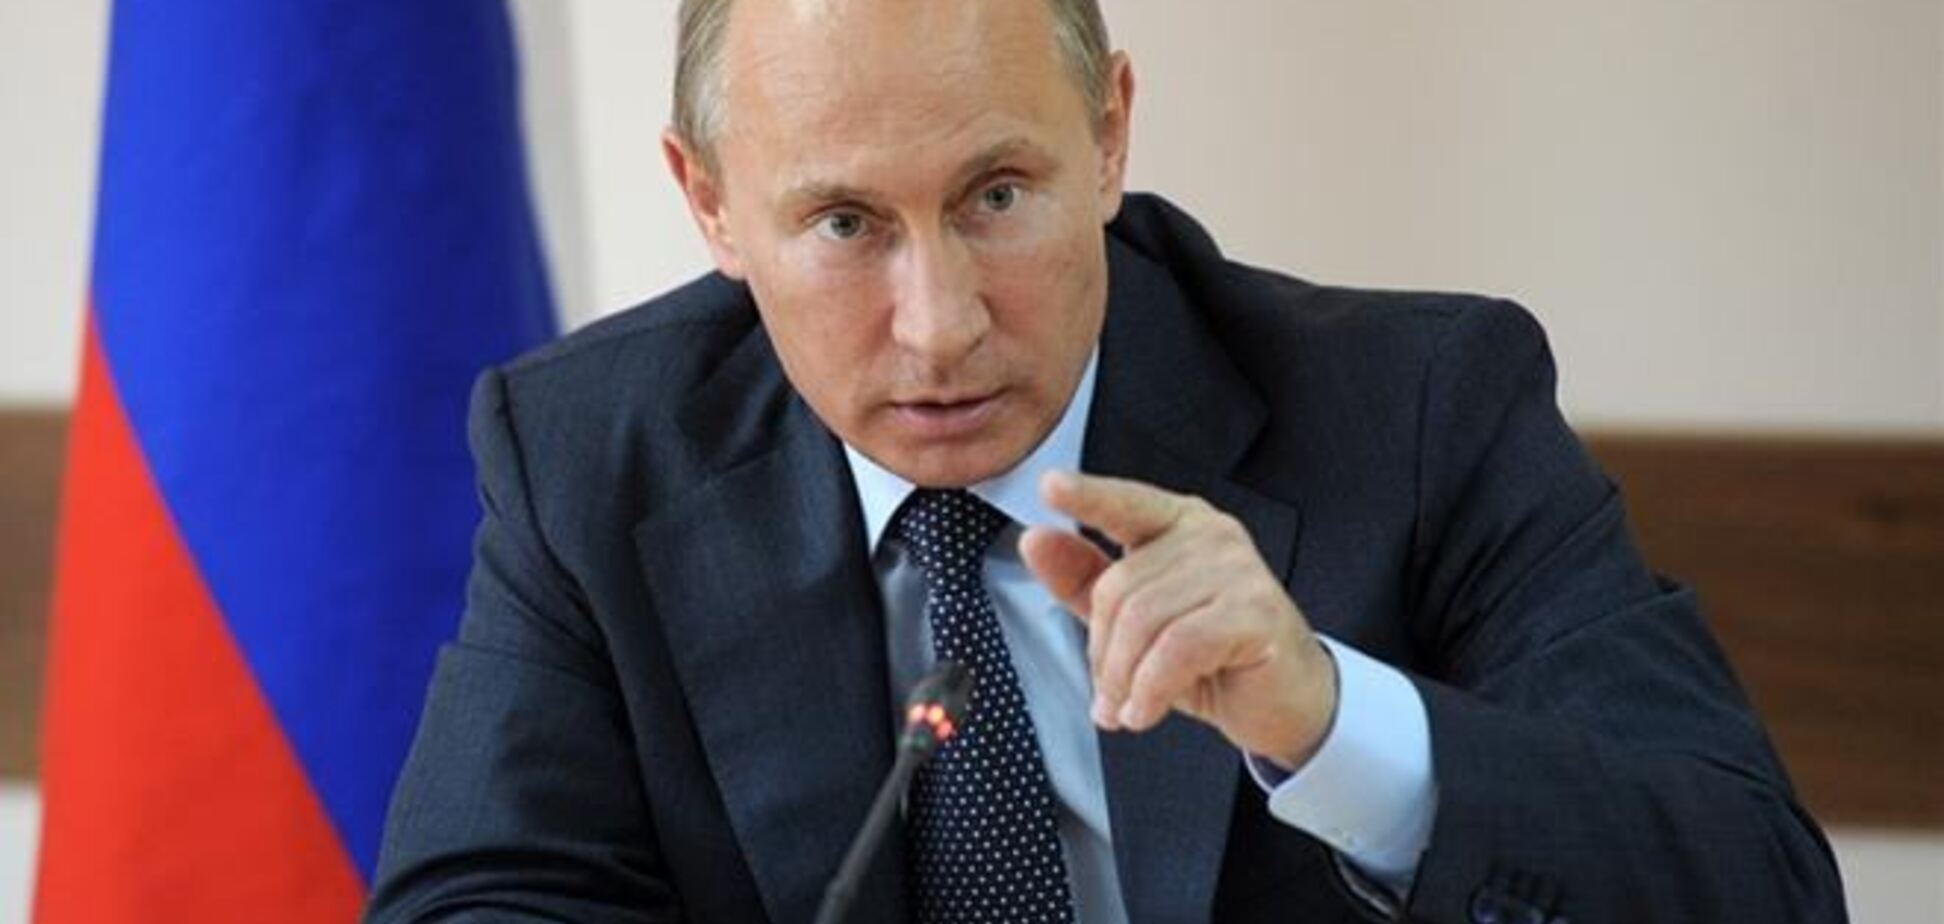 Путин 18 марта обратится к Федеральному собранию по поводу присоединения Крыма